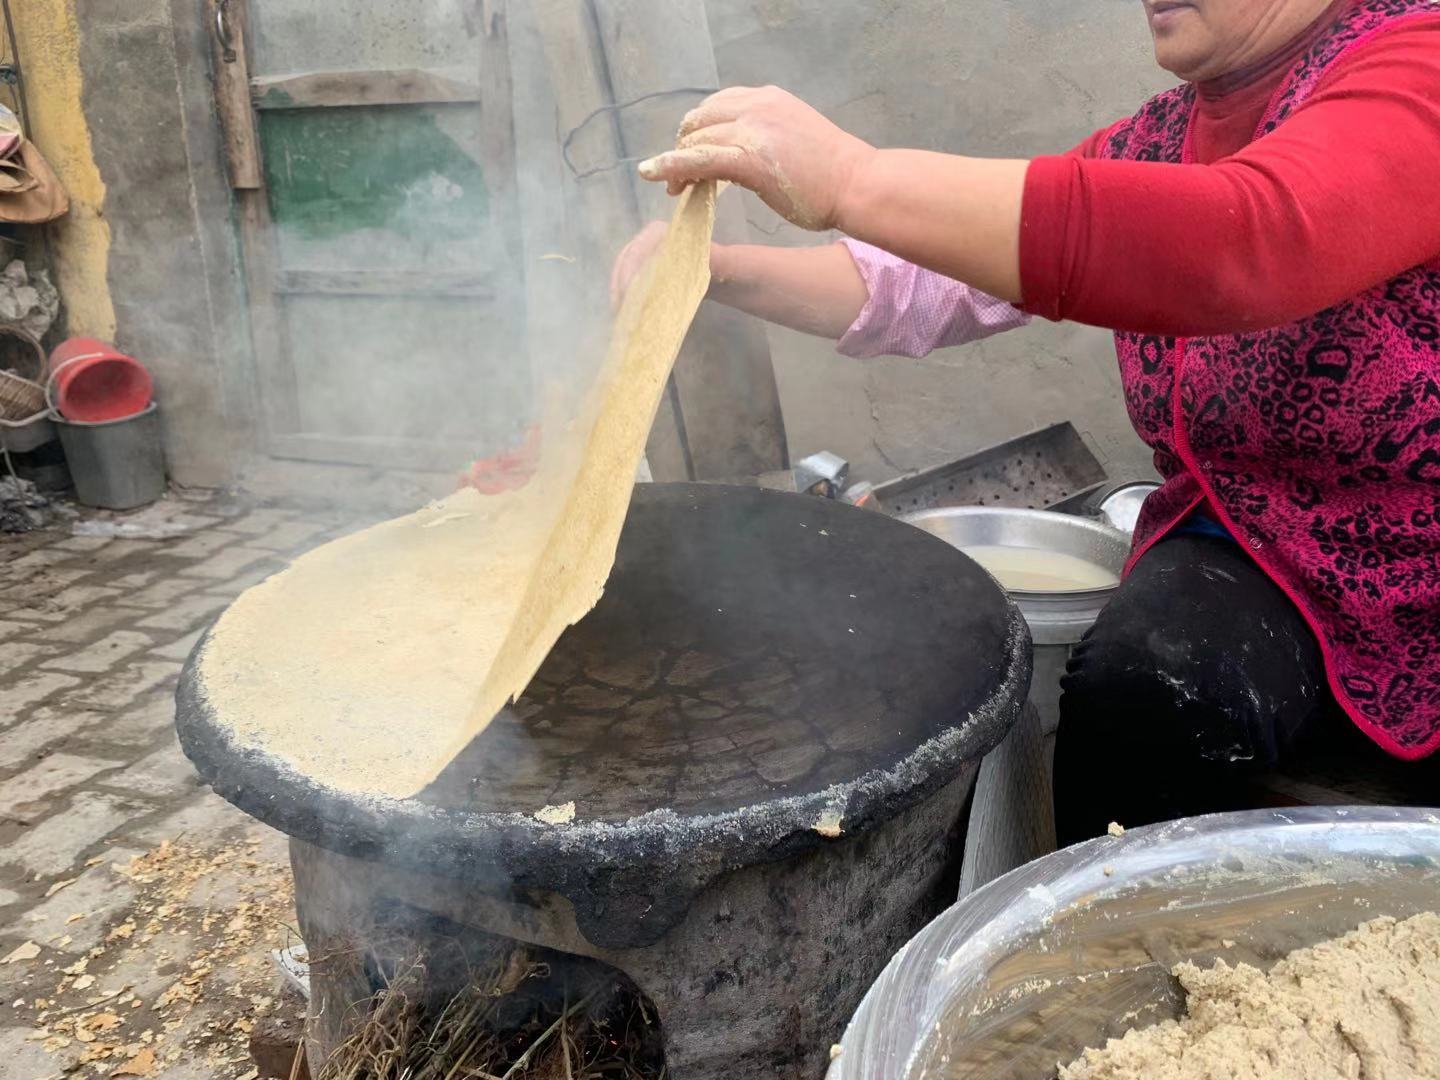 沂蒙山村农家摊煎饼,即将失传的手艺!浓浓的家乡味道